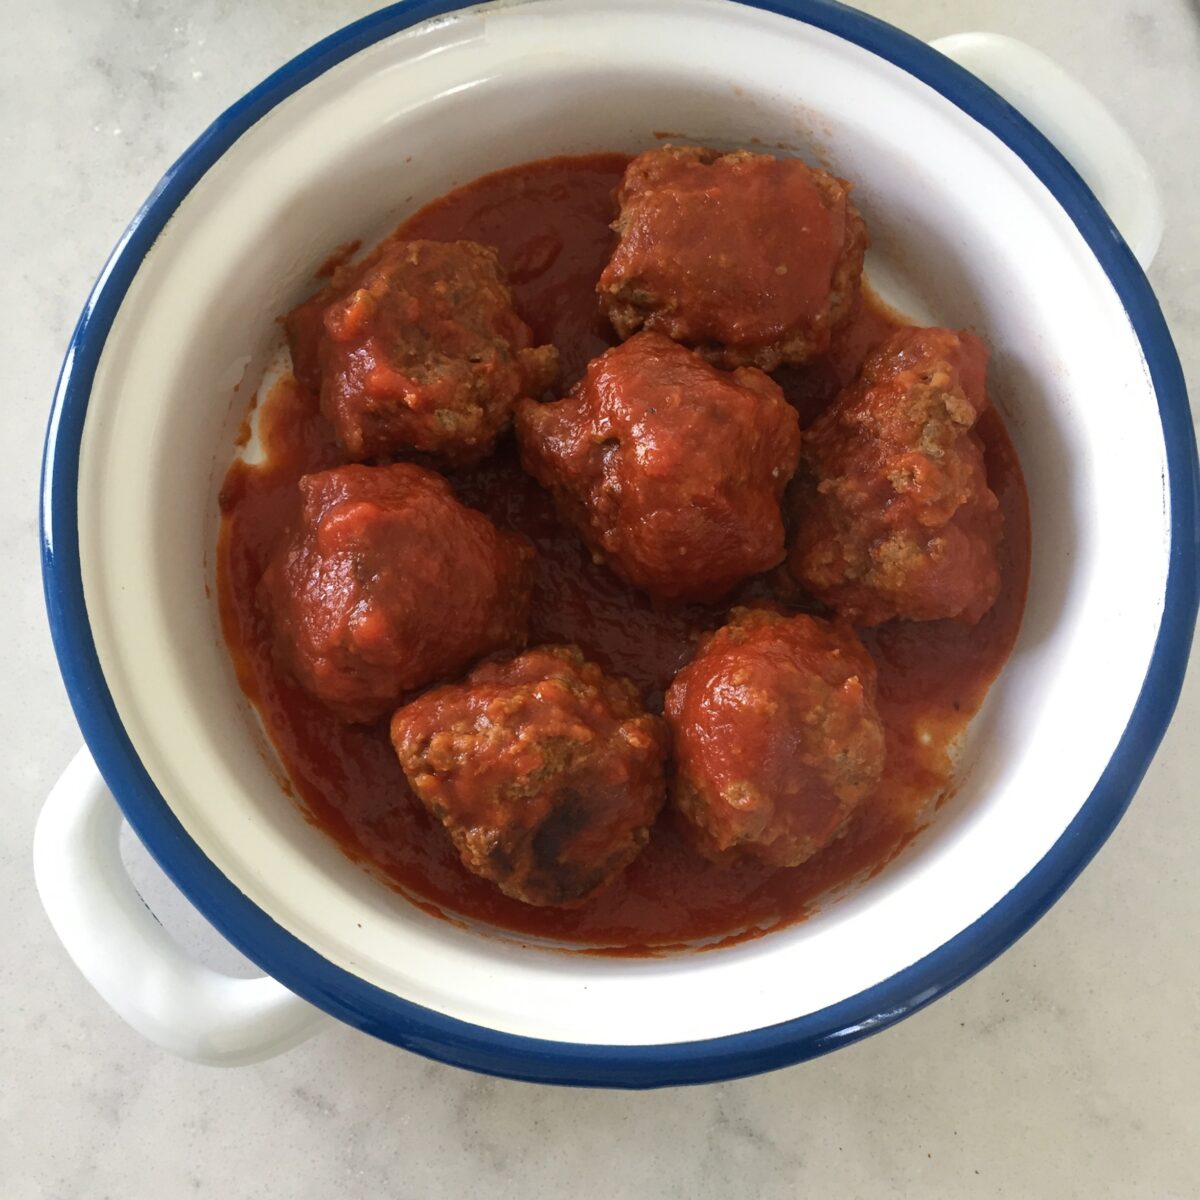 Spanish meatballs in tomato sauce